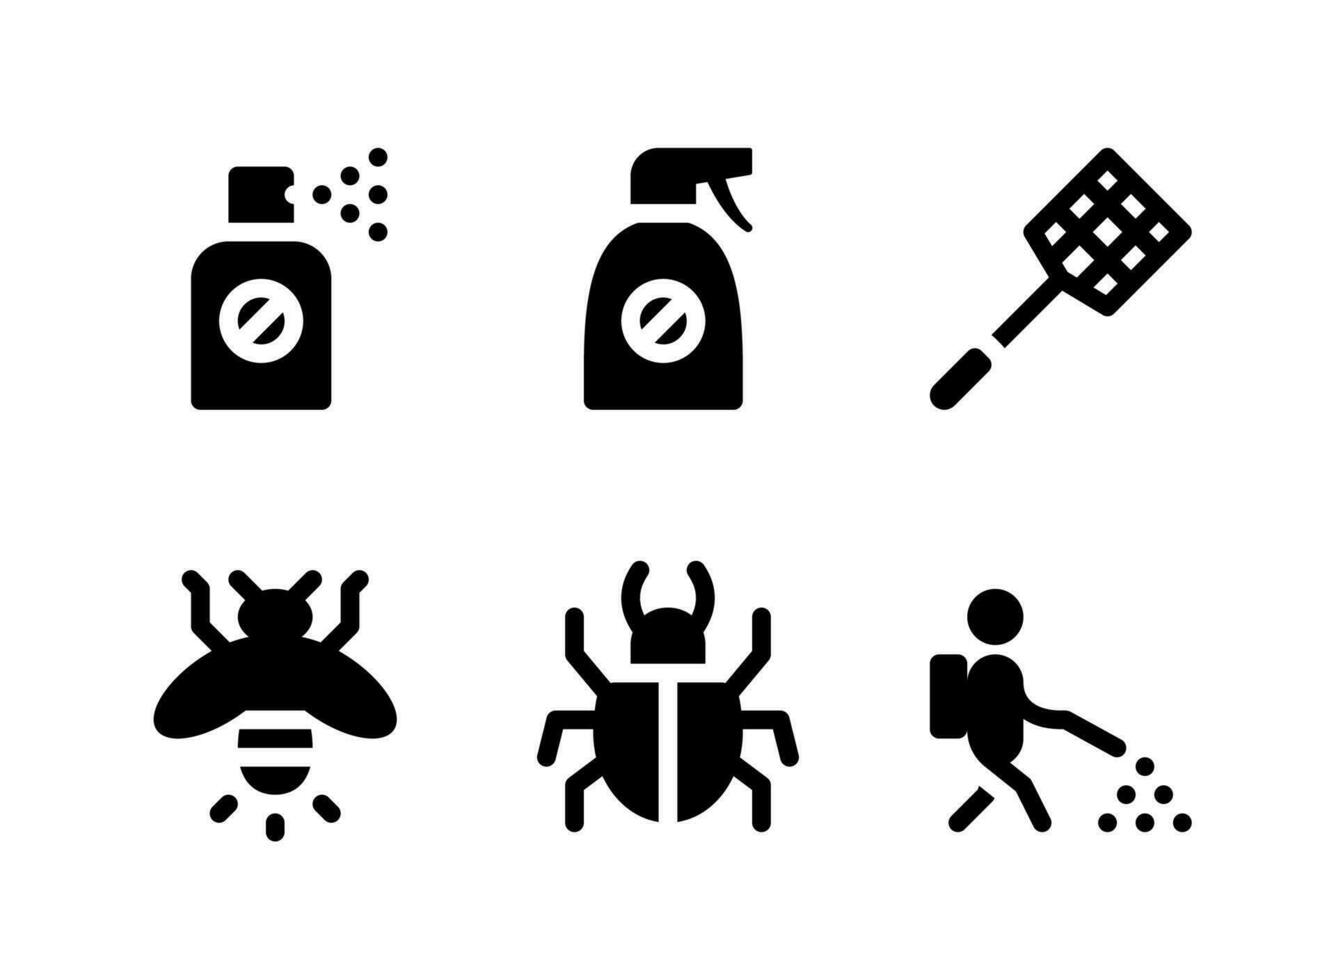 semplice set di icone solide vettoriali relative al controllo dei parassiti. contiene icone come spray, scacciamosche, lucciola, scarabeo e altro ancora.